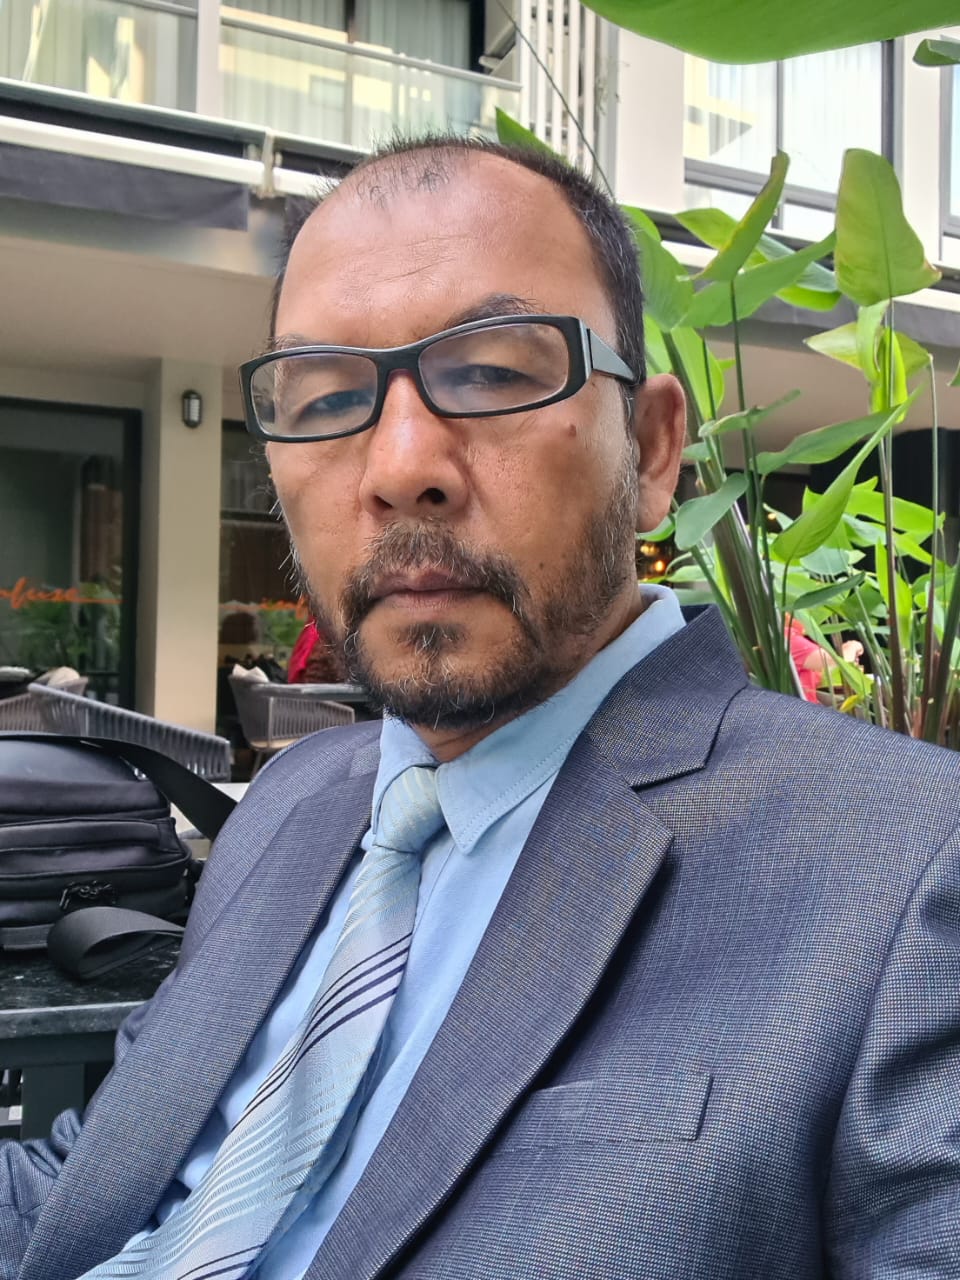 Pemerintah Aceh Bukan Tidak Peduli dengan Kegaduhan PT LMR, Hanya Saja Belum Bisa Mengintervensi